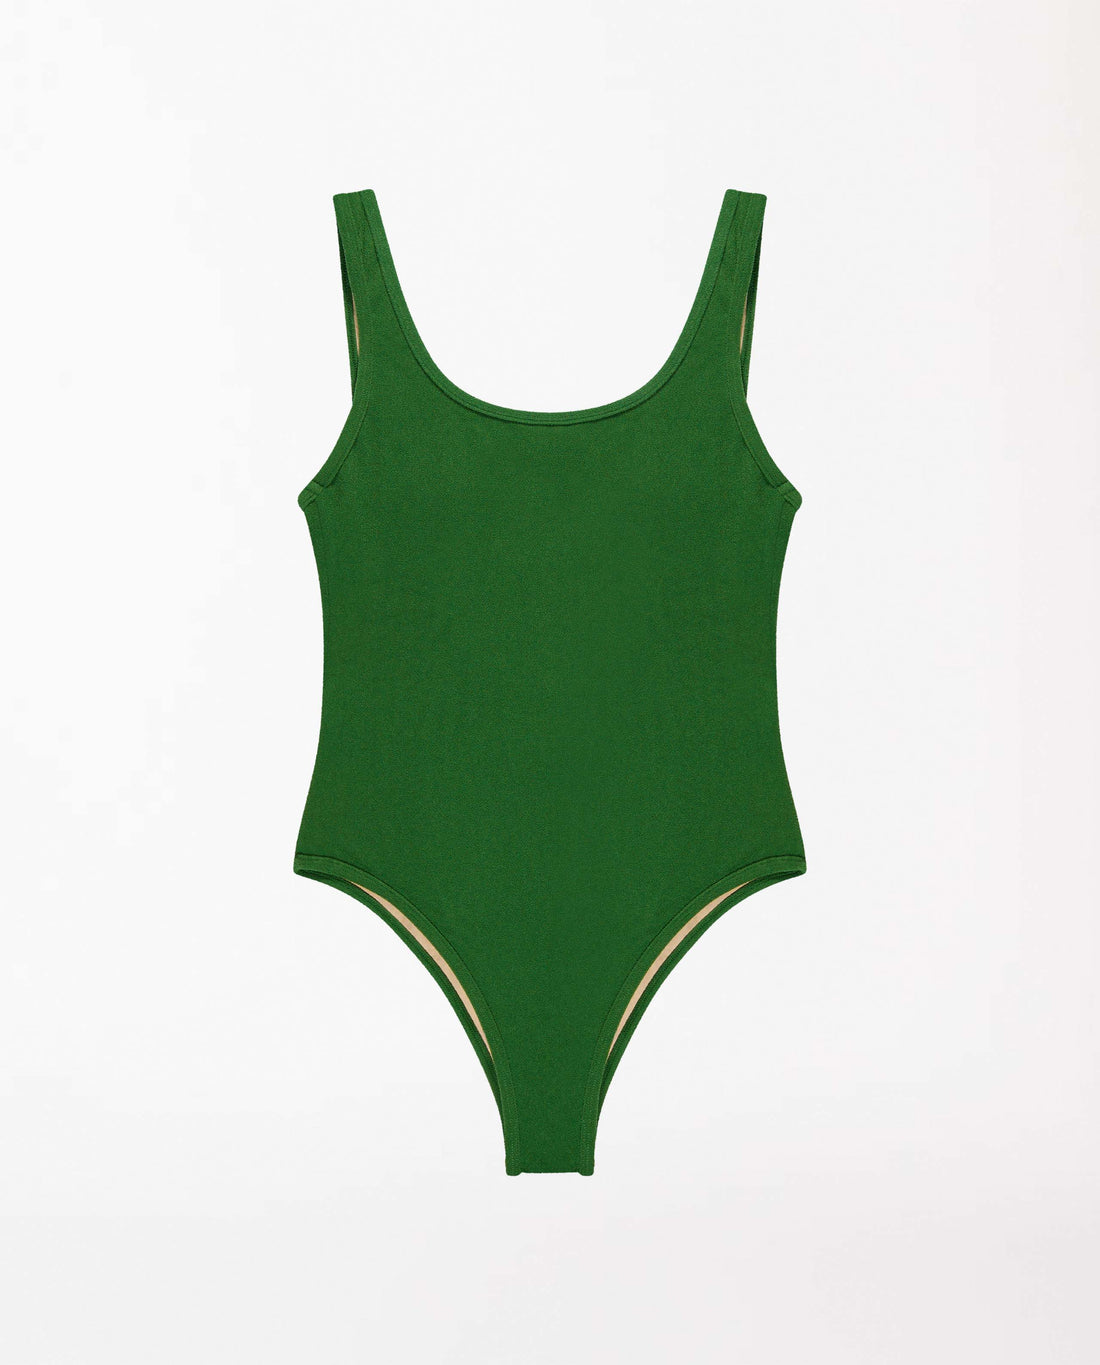 marché commun oy surf maillot de bain femme une pièce dos nu recyclé en éponge vert